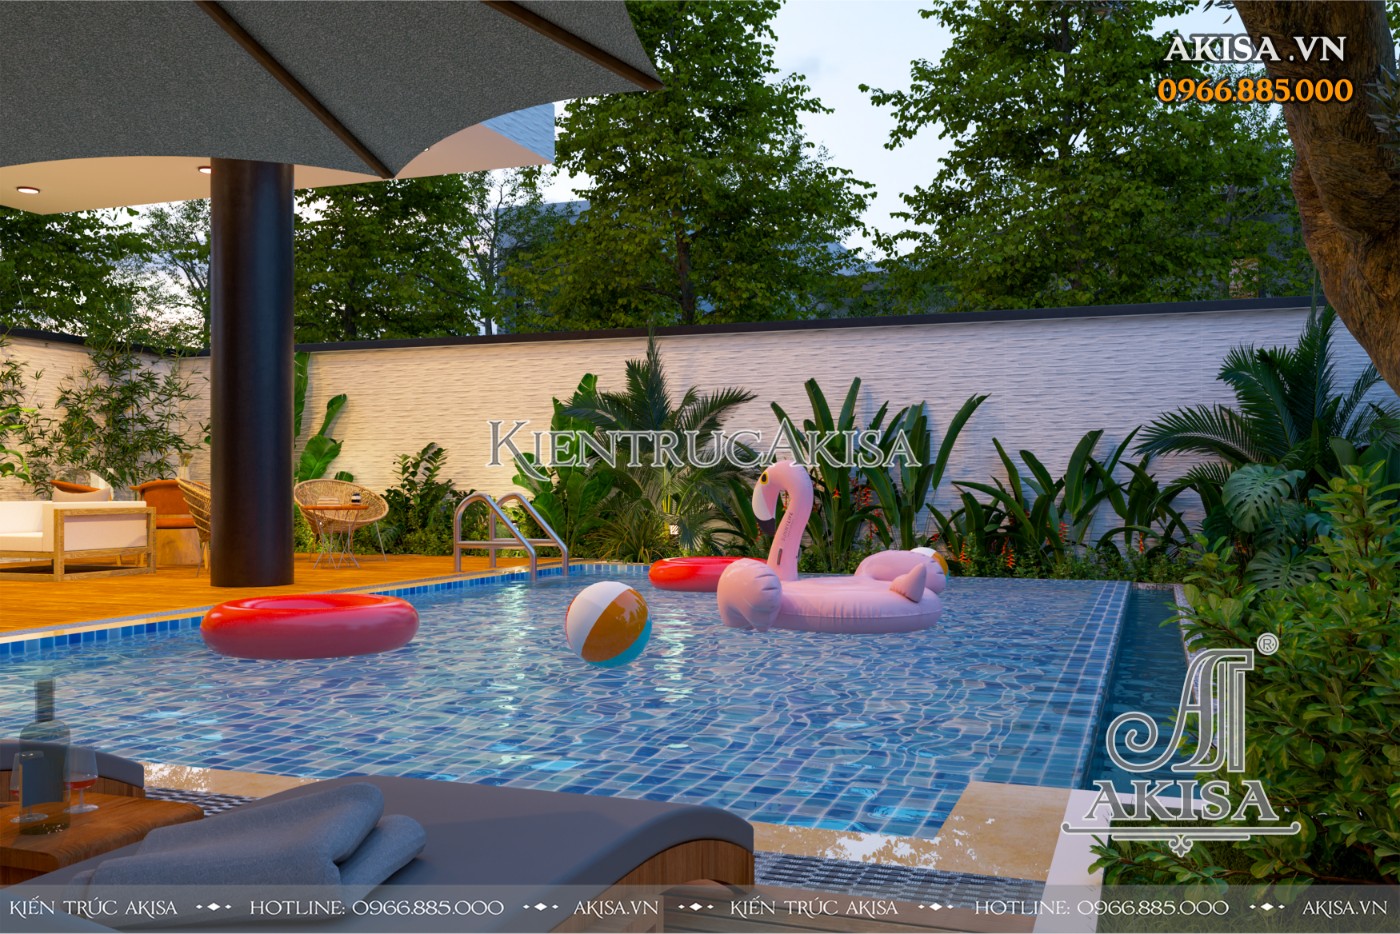 Mẫu biệt thự Villa nghỉ dưỡng 2 tầng có thiết kế bể bơi giúp những hoạt động ngoài trời trong ngày hè trở nên náo nhiệt 